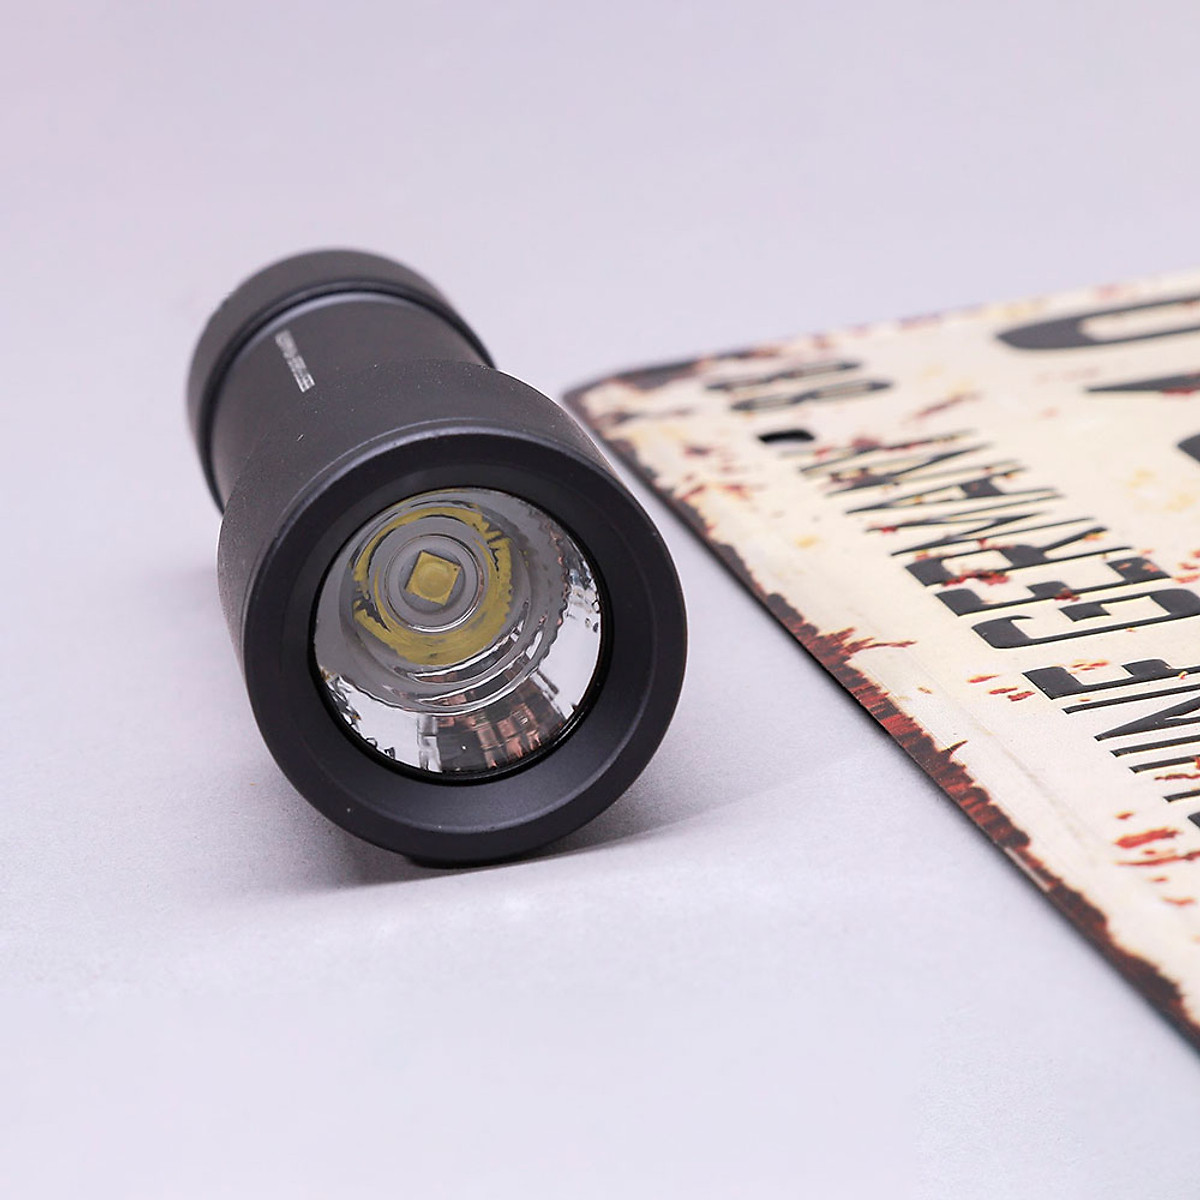 Đèn pin Sothing Beebest F1 tay cầm vỏ hợp kim, nhỏ gọn, phạm vi chiếu tối đa 130m- Hàng chính hãng